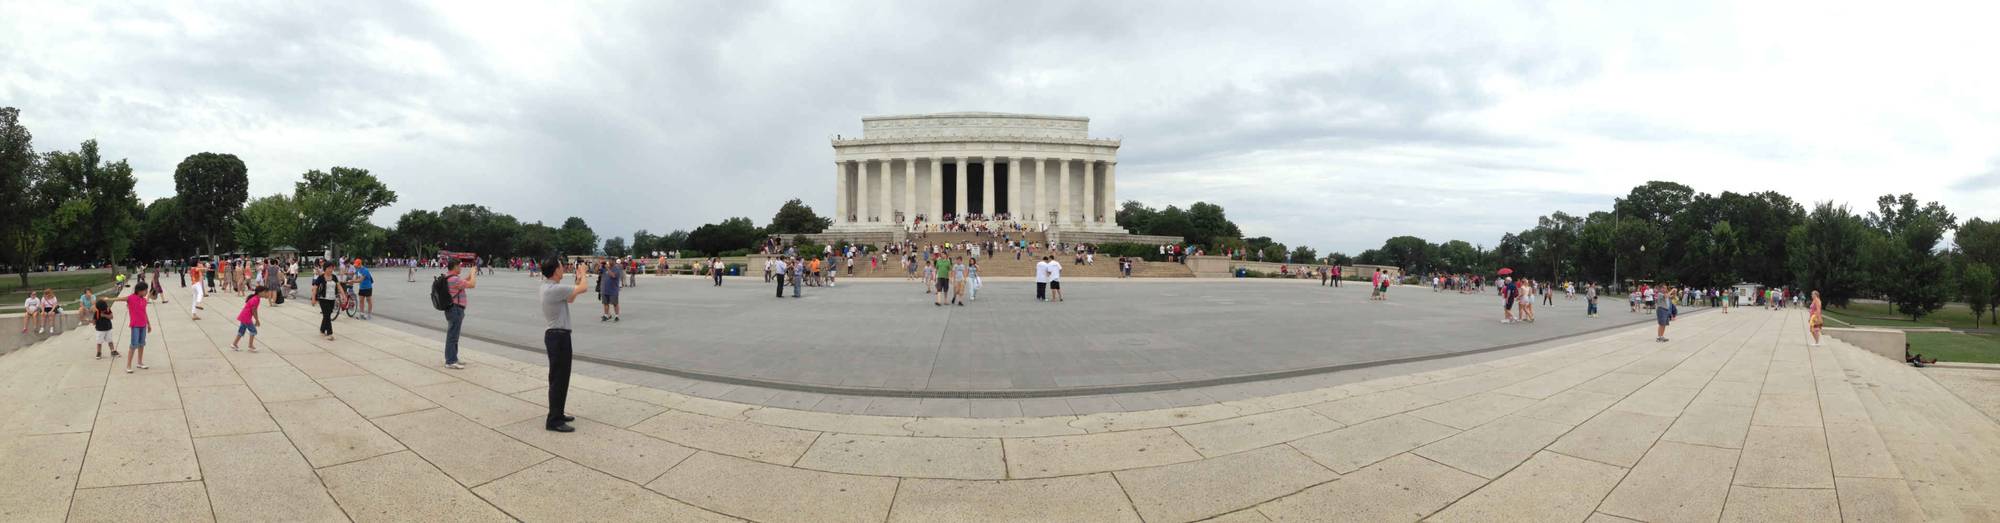 Lincoln Memorial panoramla